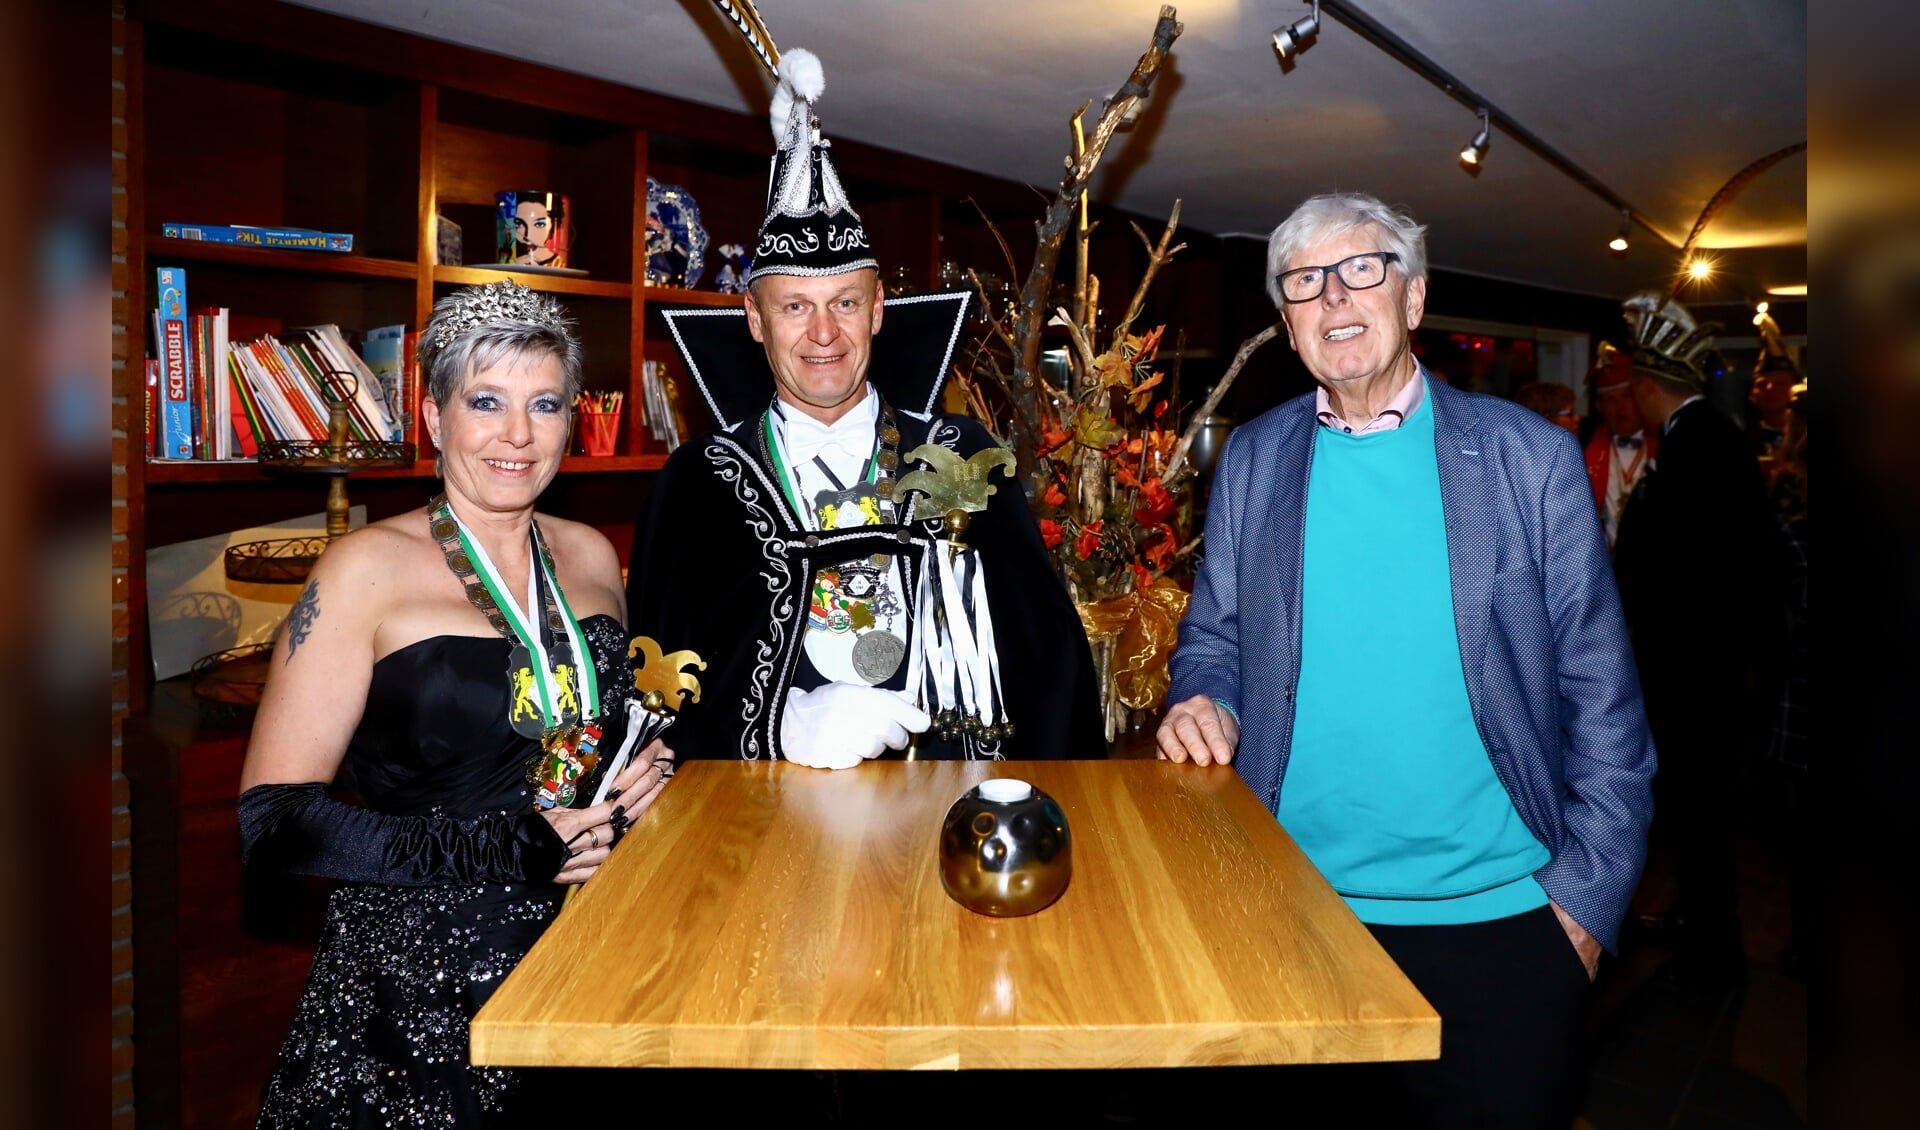 Nachtburgemeester Leo proostte ook met het Carnavaleske Stadsprinselijke paar John en Mirjam (Foto: Koos Bommelé)